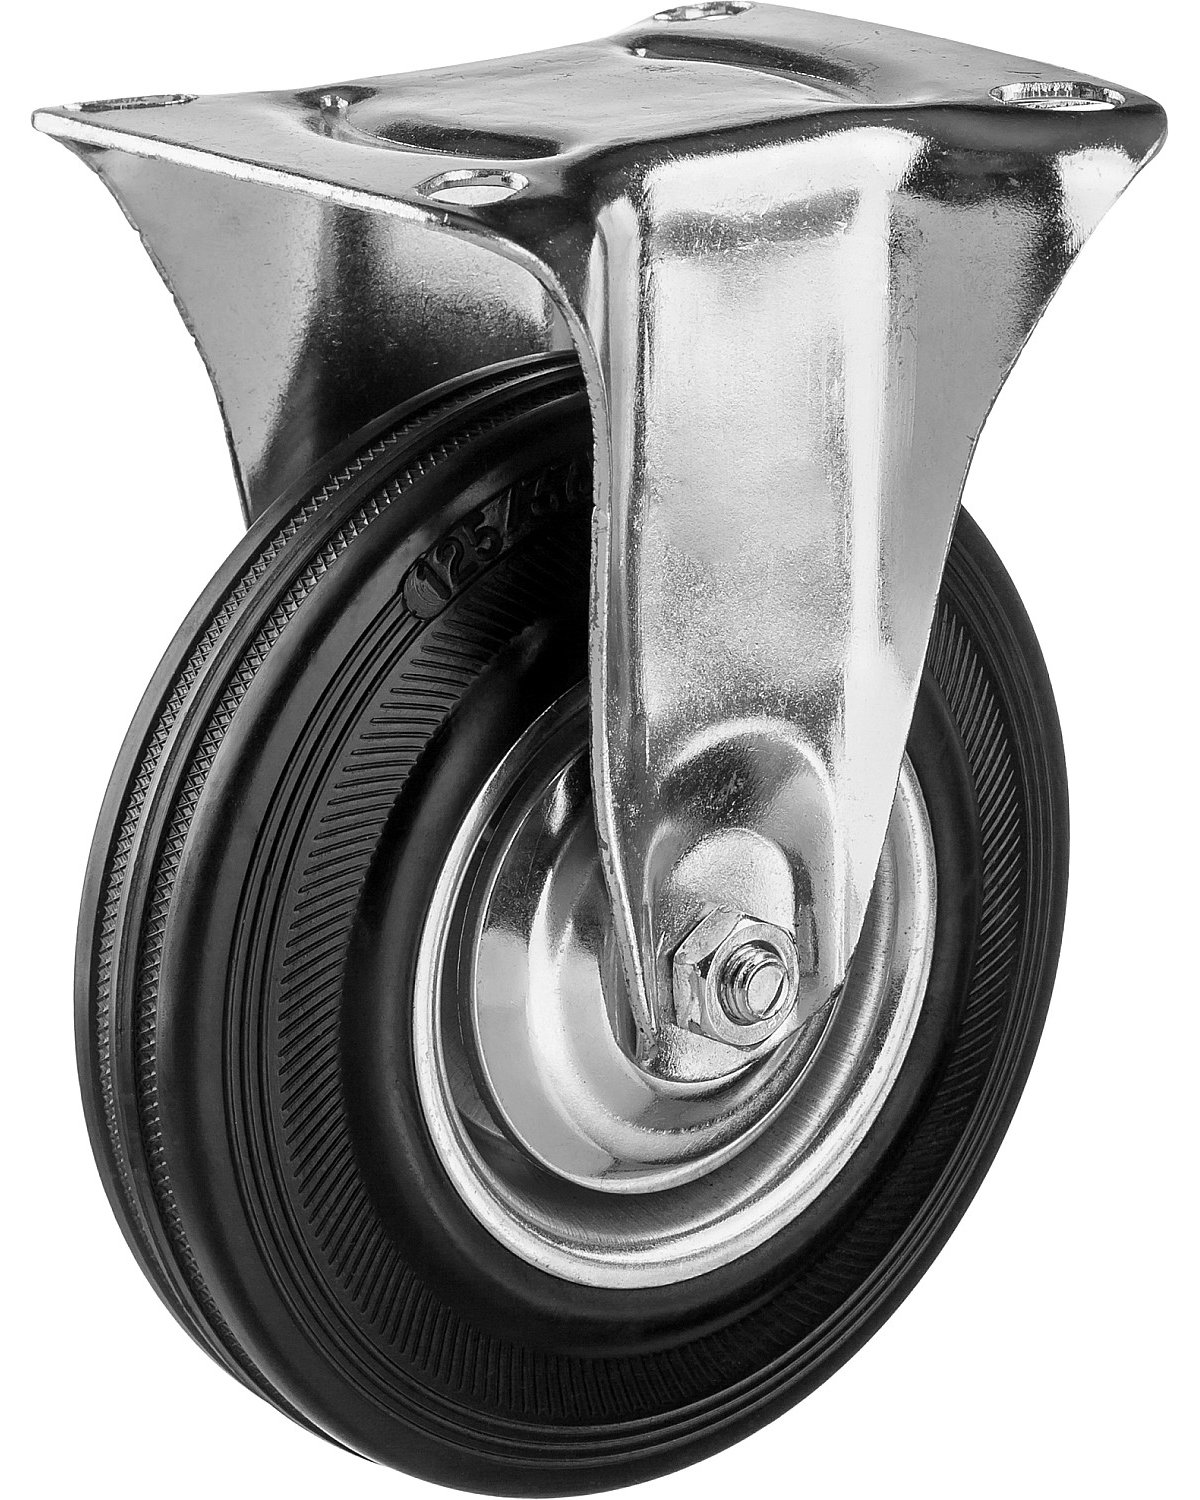 Неповоротное колесо резина металл игольчатый подшипник ЗУБР Профессионал d 125 мм г п 100 кг (30936-125-F)